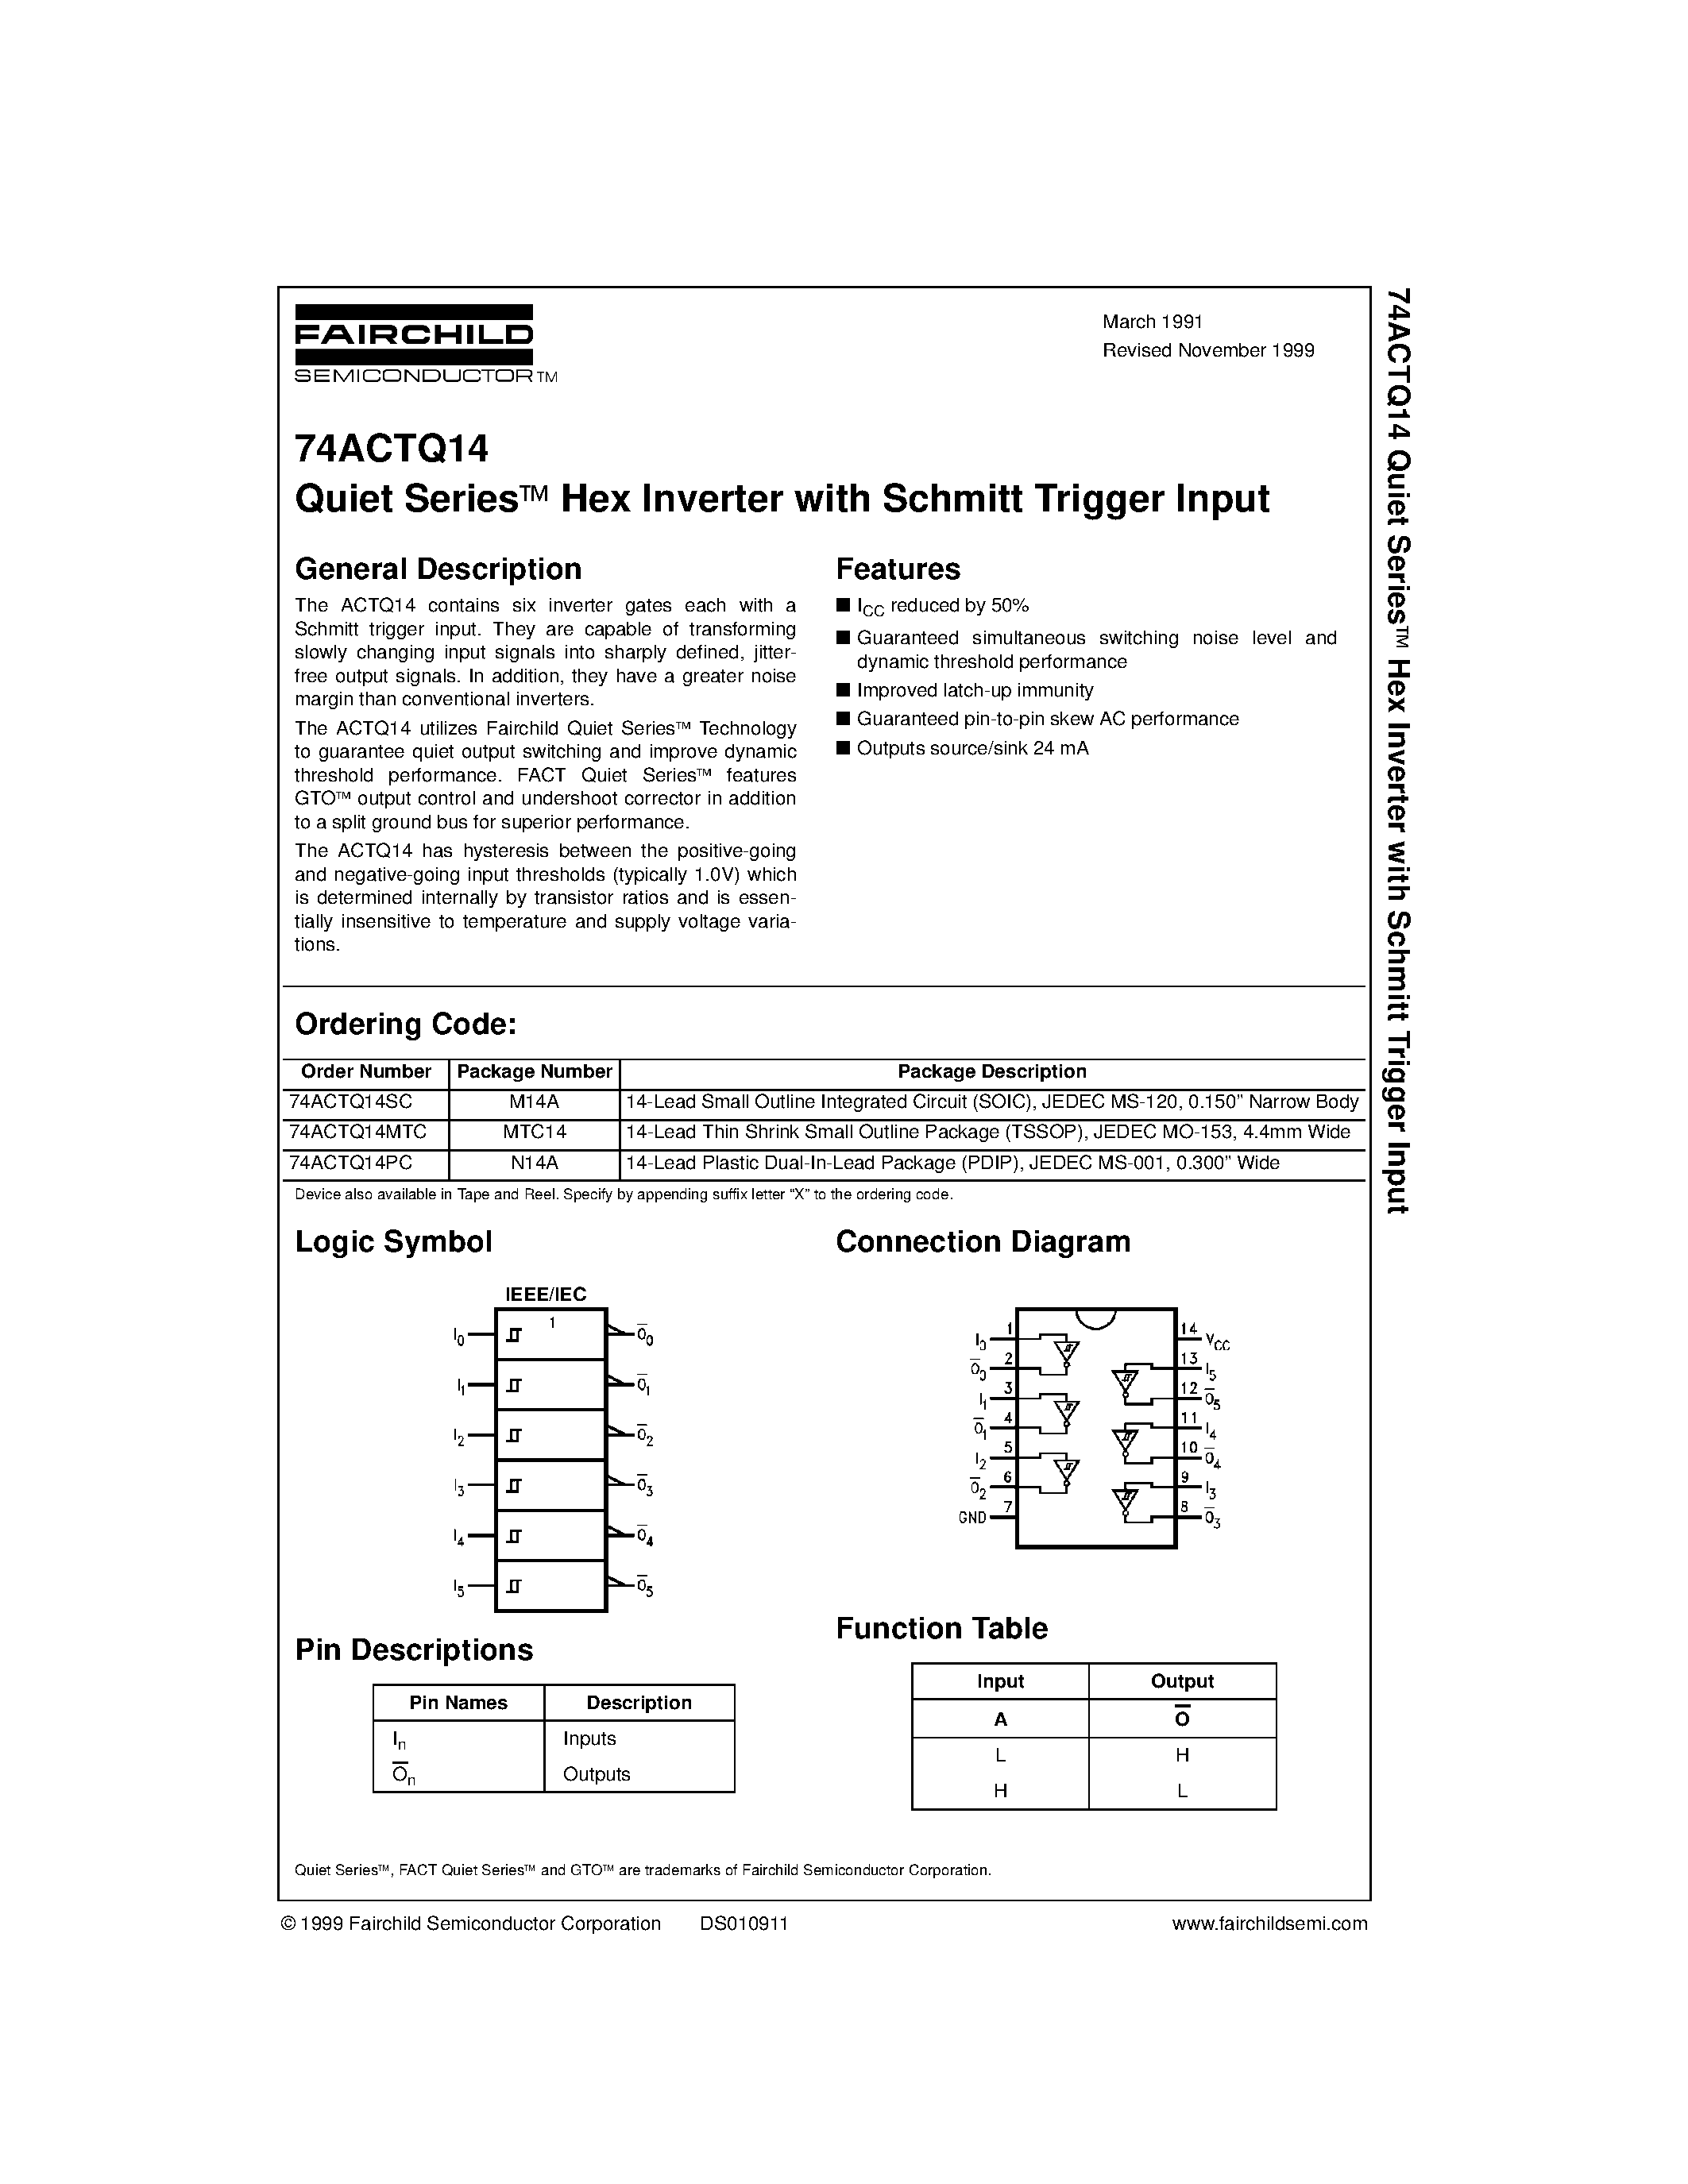 Datasheet 74ACTQ14MTC - Quiet Series Hex Inverter with Schmitt Trigger Input page 1